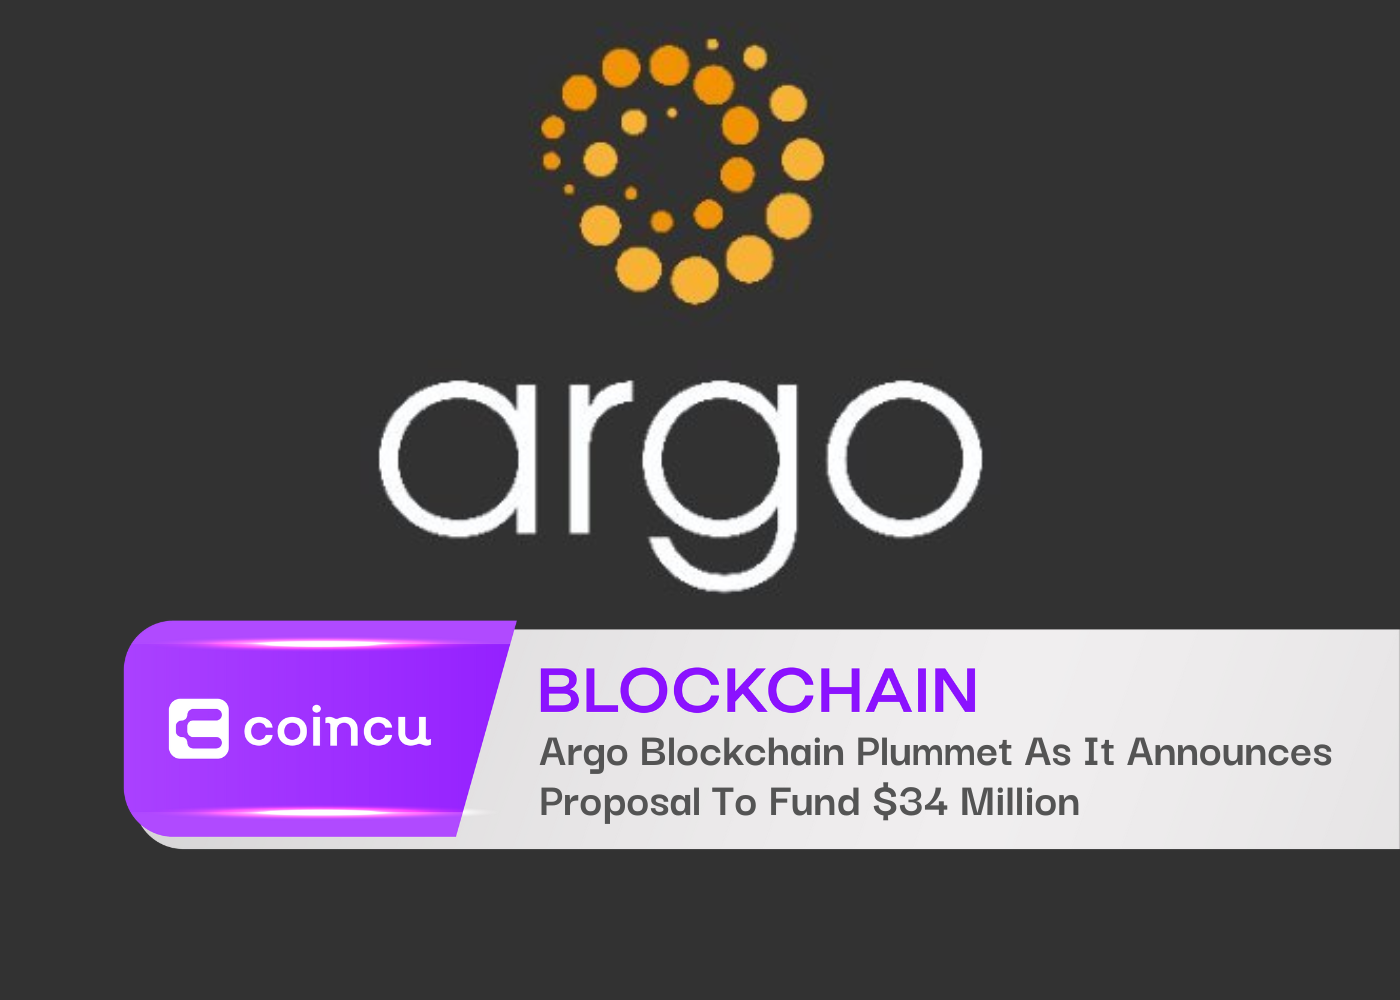 Argo Blockchain Plummet As It Announces